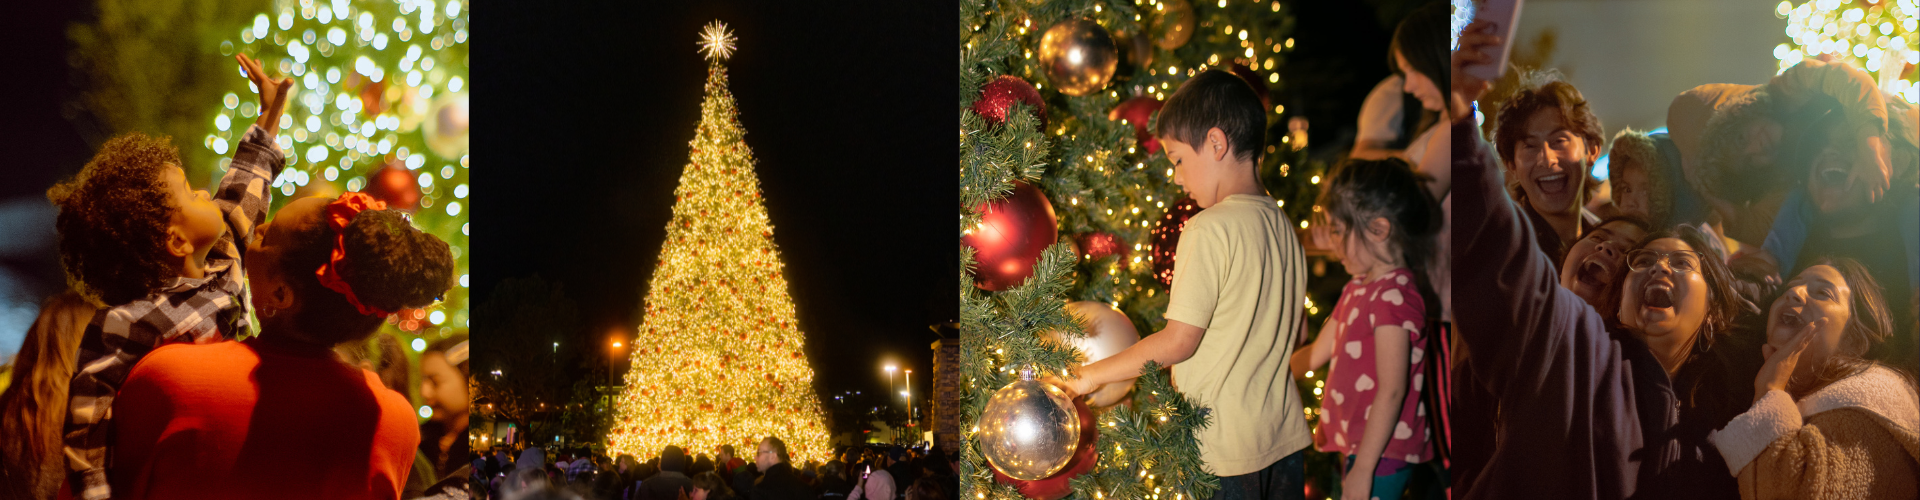 Christmas_Tree_Lighting.png